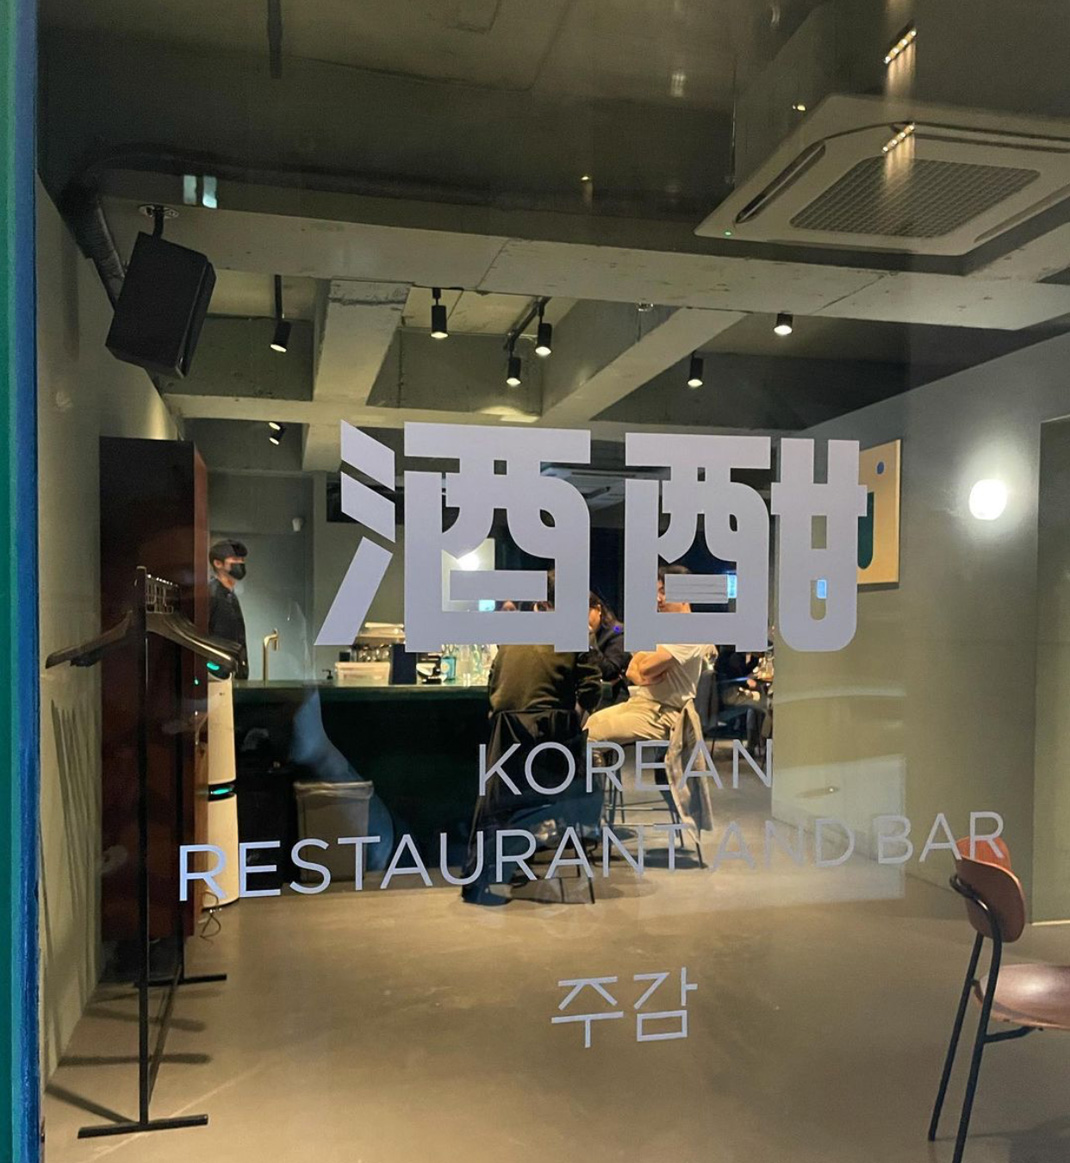 英式酒吧KOREAN RESTAURANT AND BAR 韩国 酒吧 字体设计 菜单设计 logo设计 vi设计 空间设计